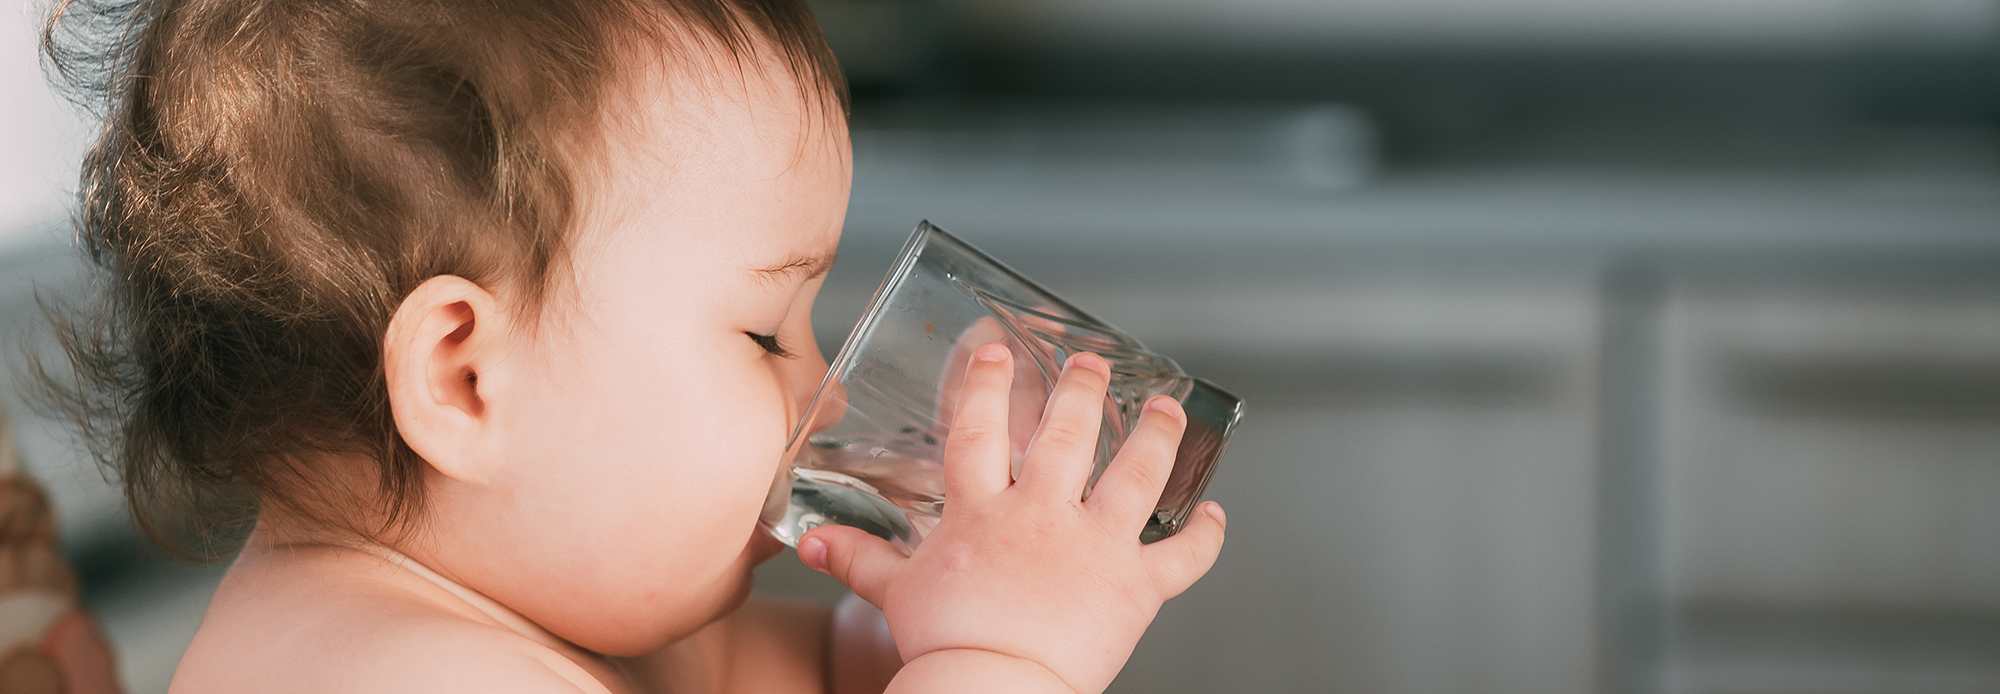 Pueden tomar agua los bebés? ¿Cuánta agua pueden tomar?